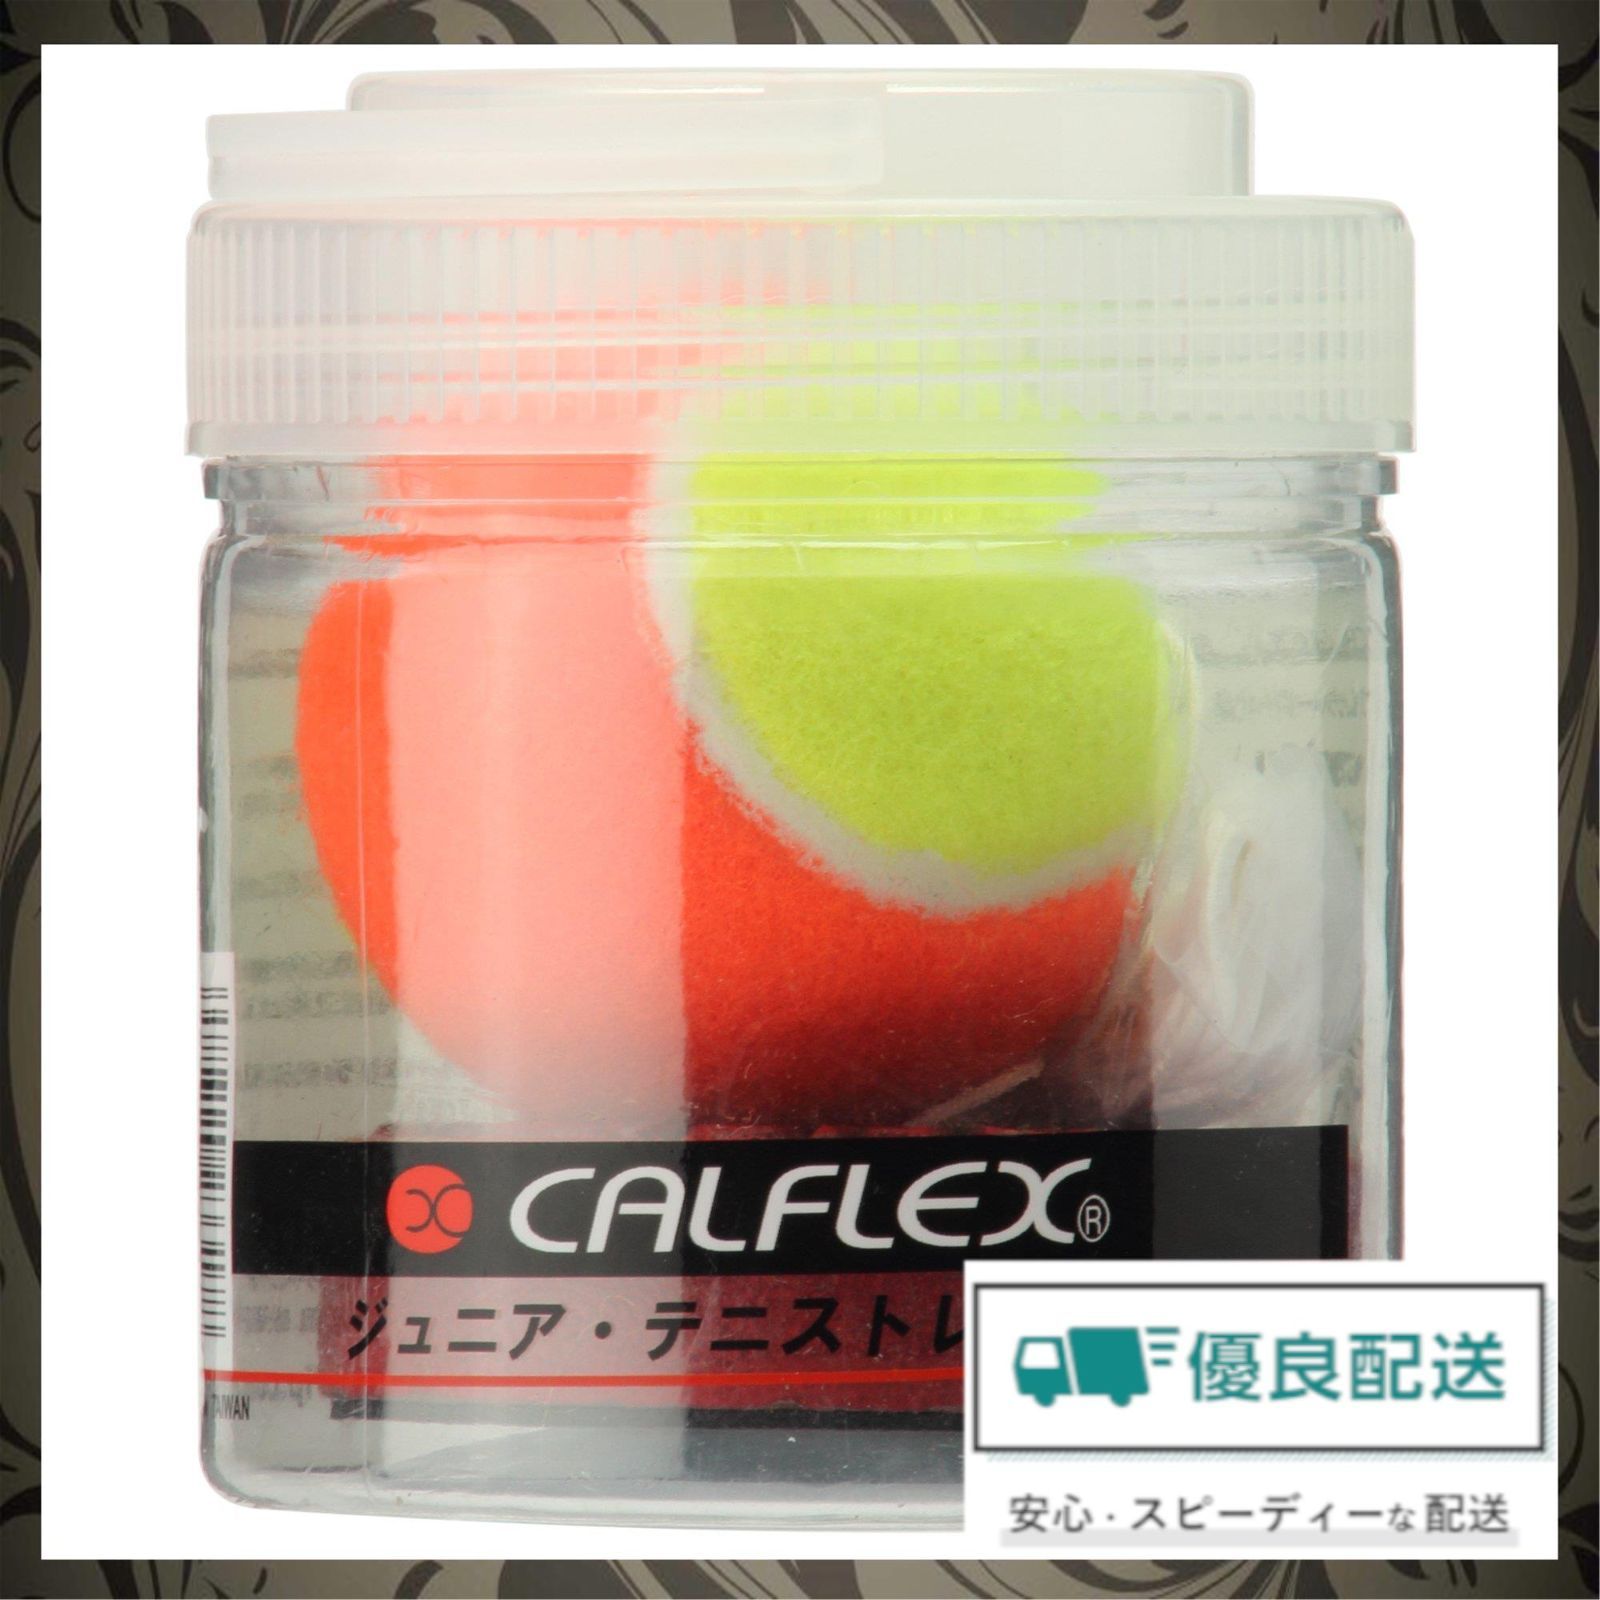 【人気商品】テニス ジュニア 硬式 CALFLEX(カルフレックス) テニストレーナー サクライ貿易(SAKURAI) TT-31